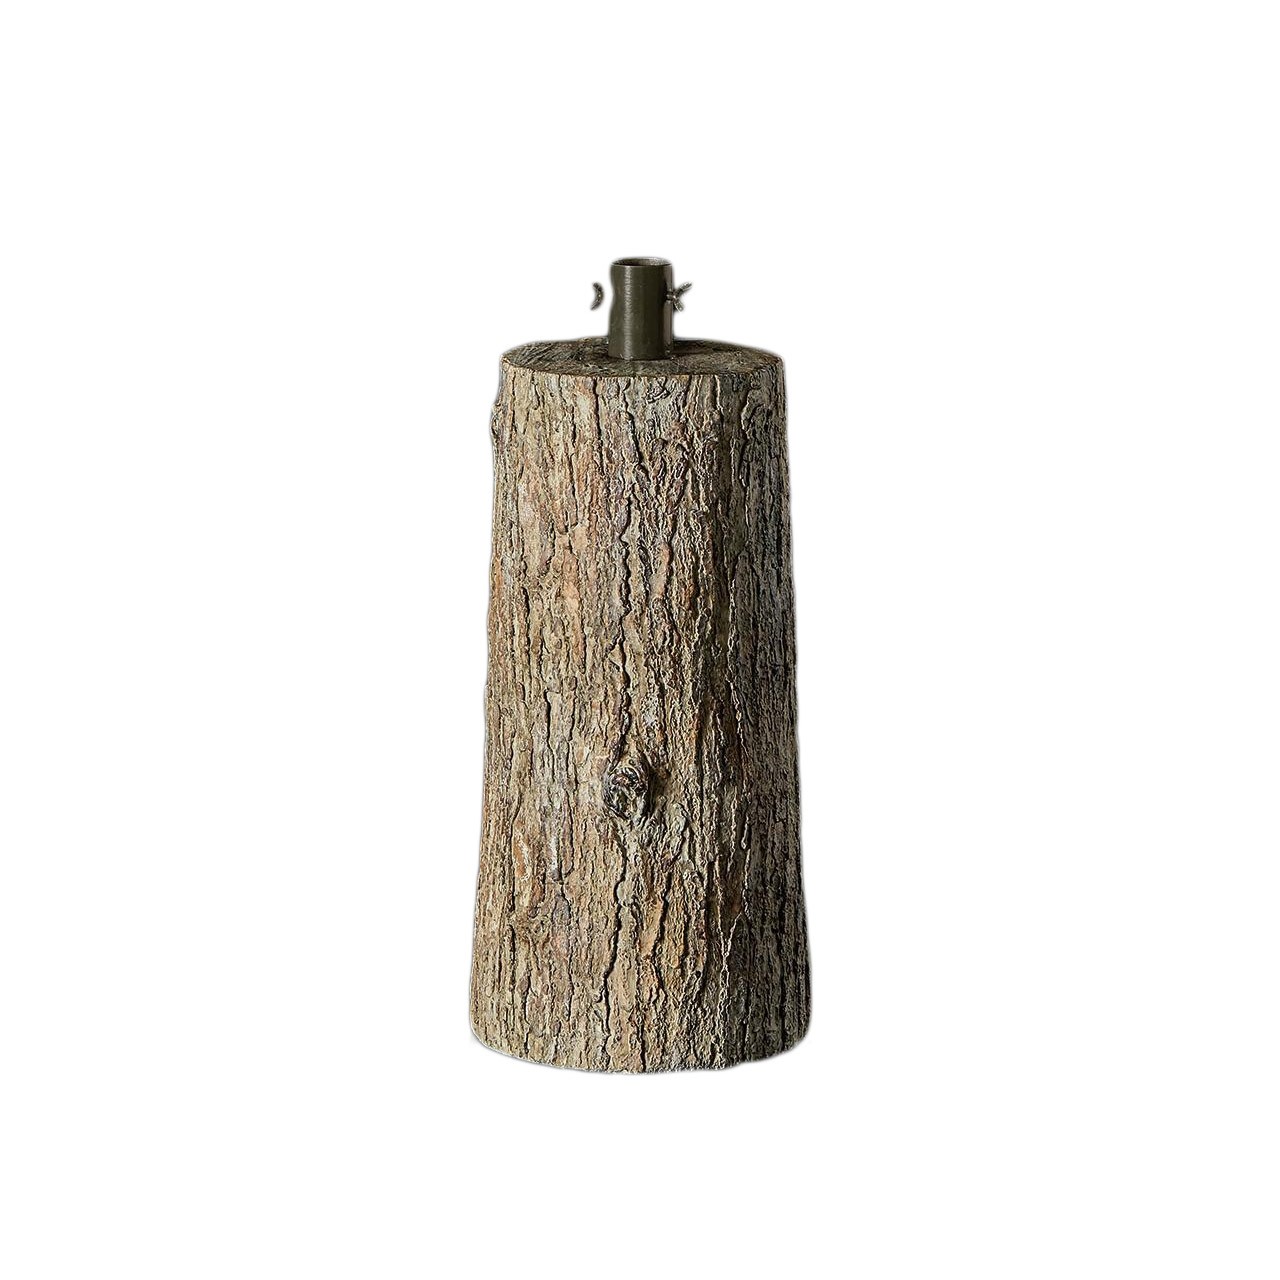 Base tronco per pino - H55xD30 cm - EDG